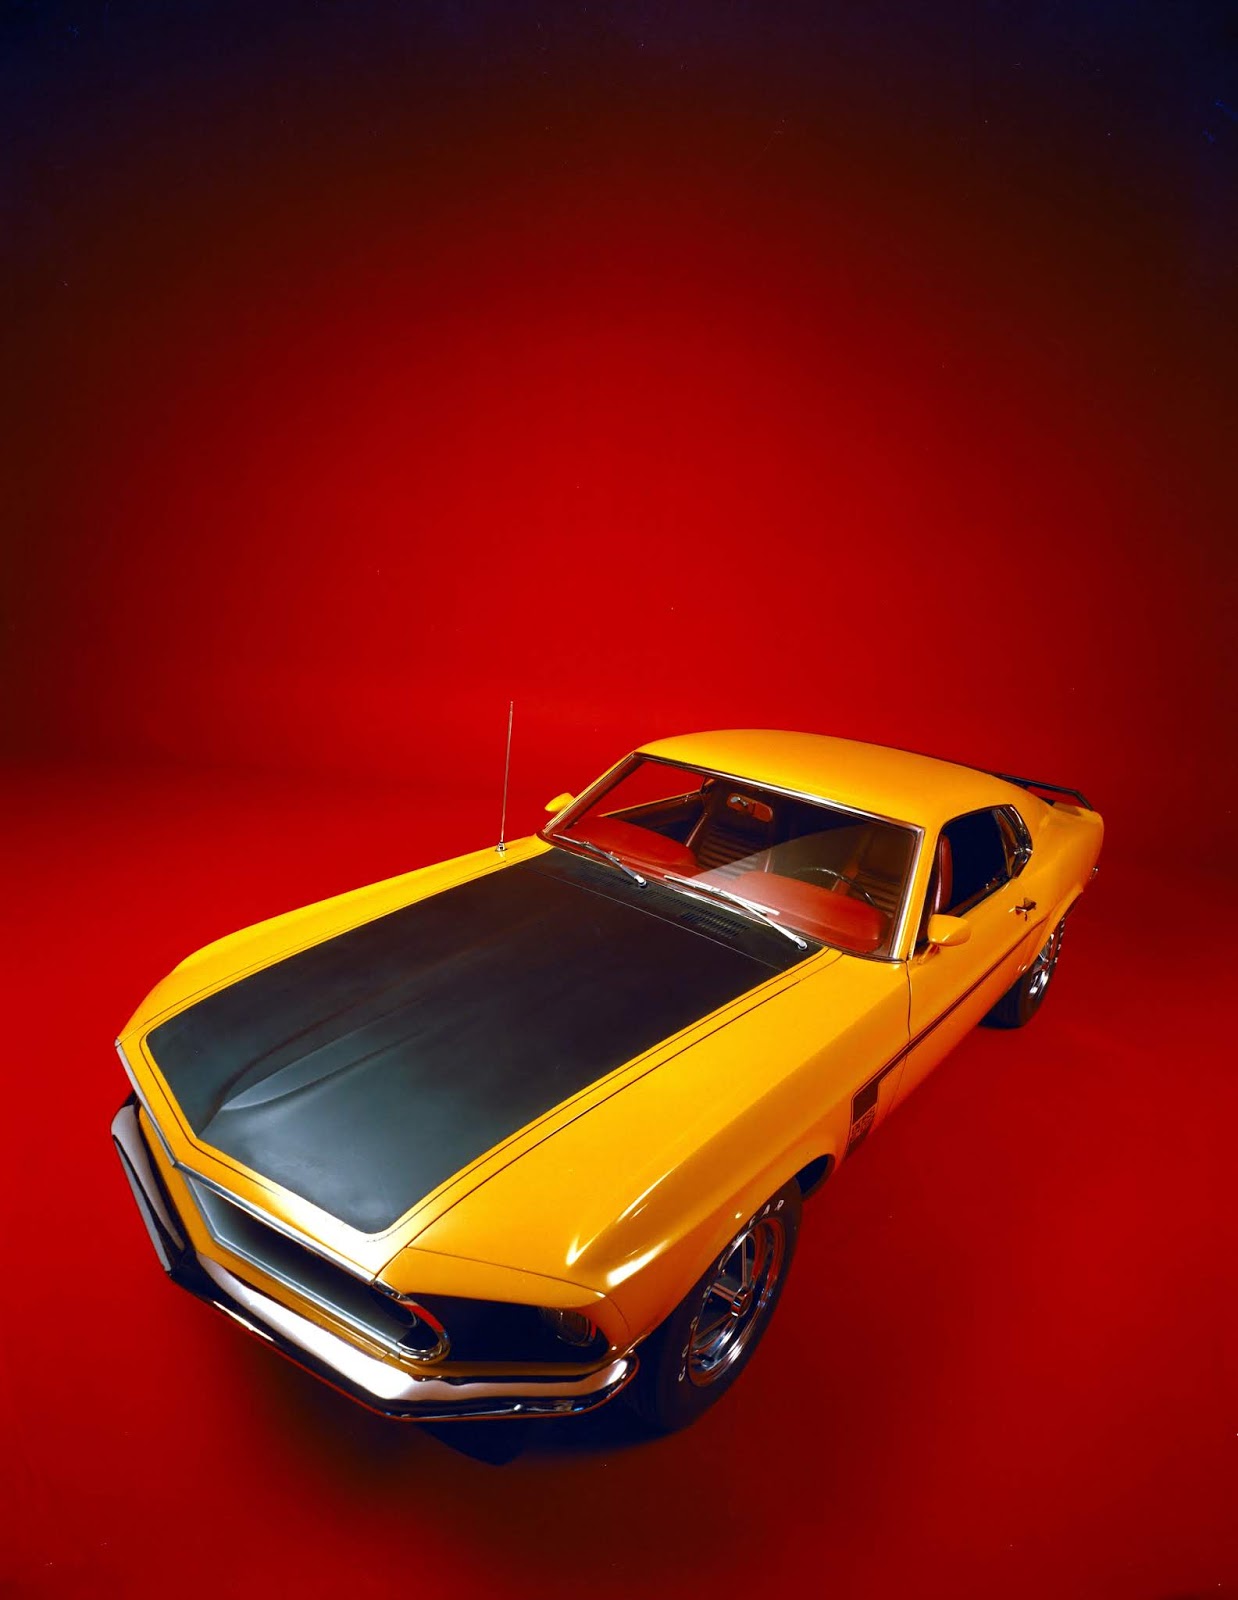 1969 Ford Mustang Boss 302 Πώς γιορτάζει η Mustang τα 55 της χρόνια;